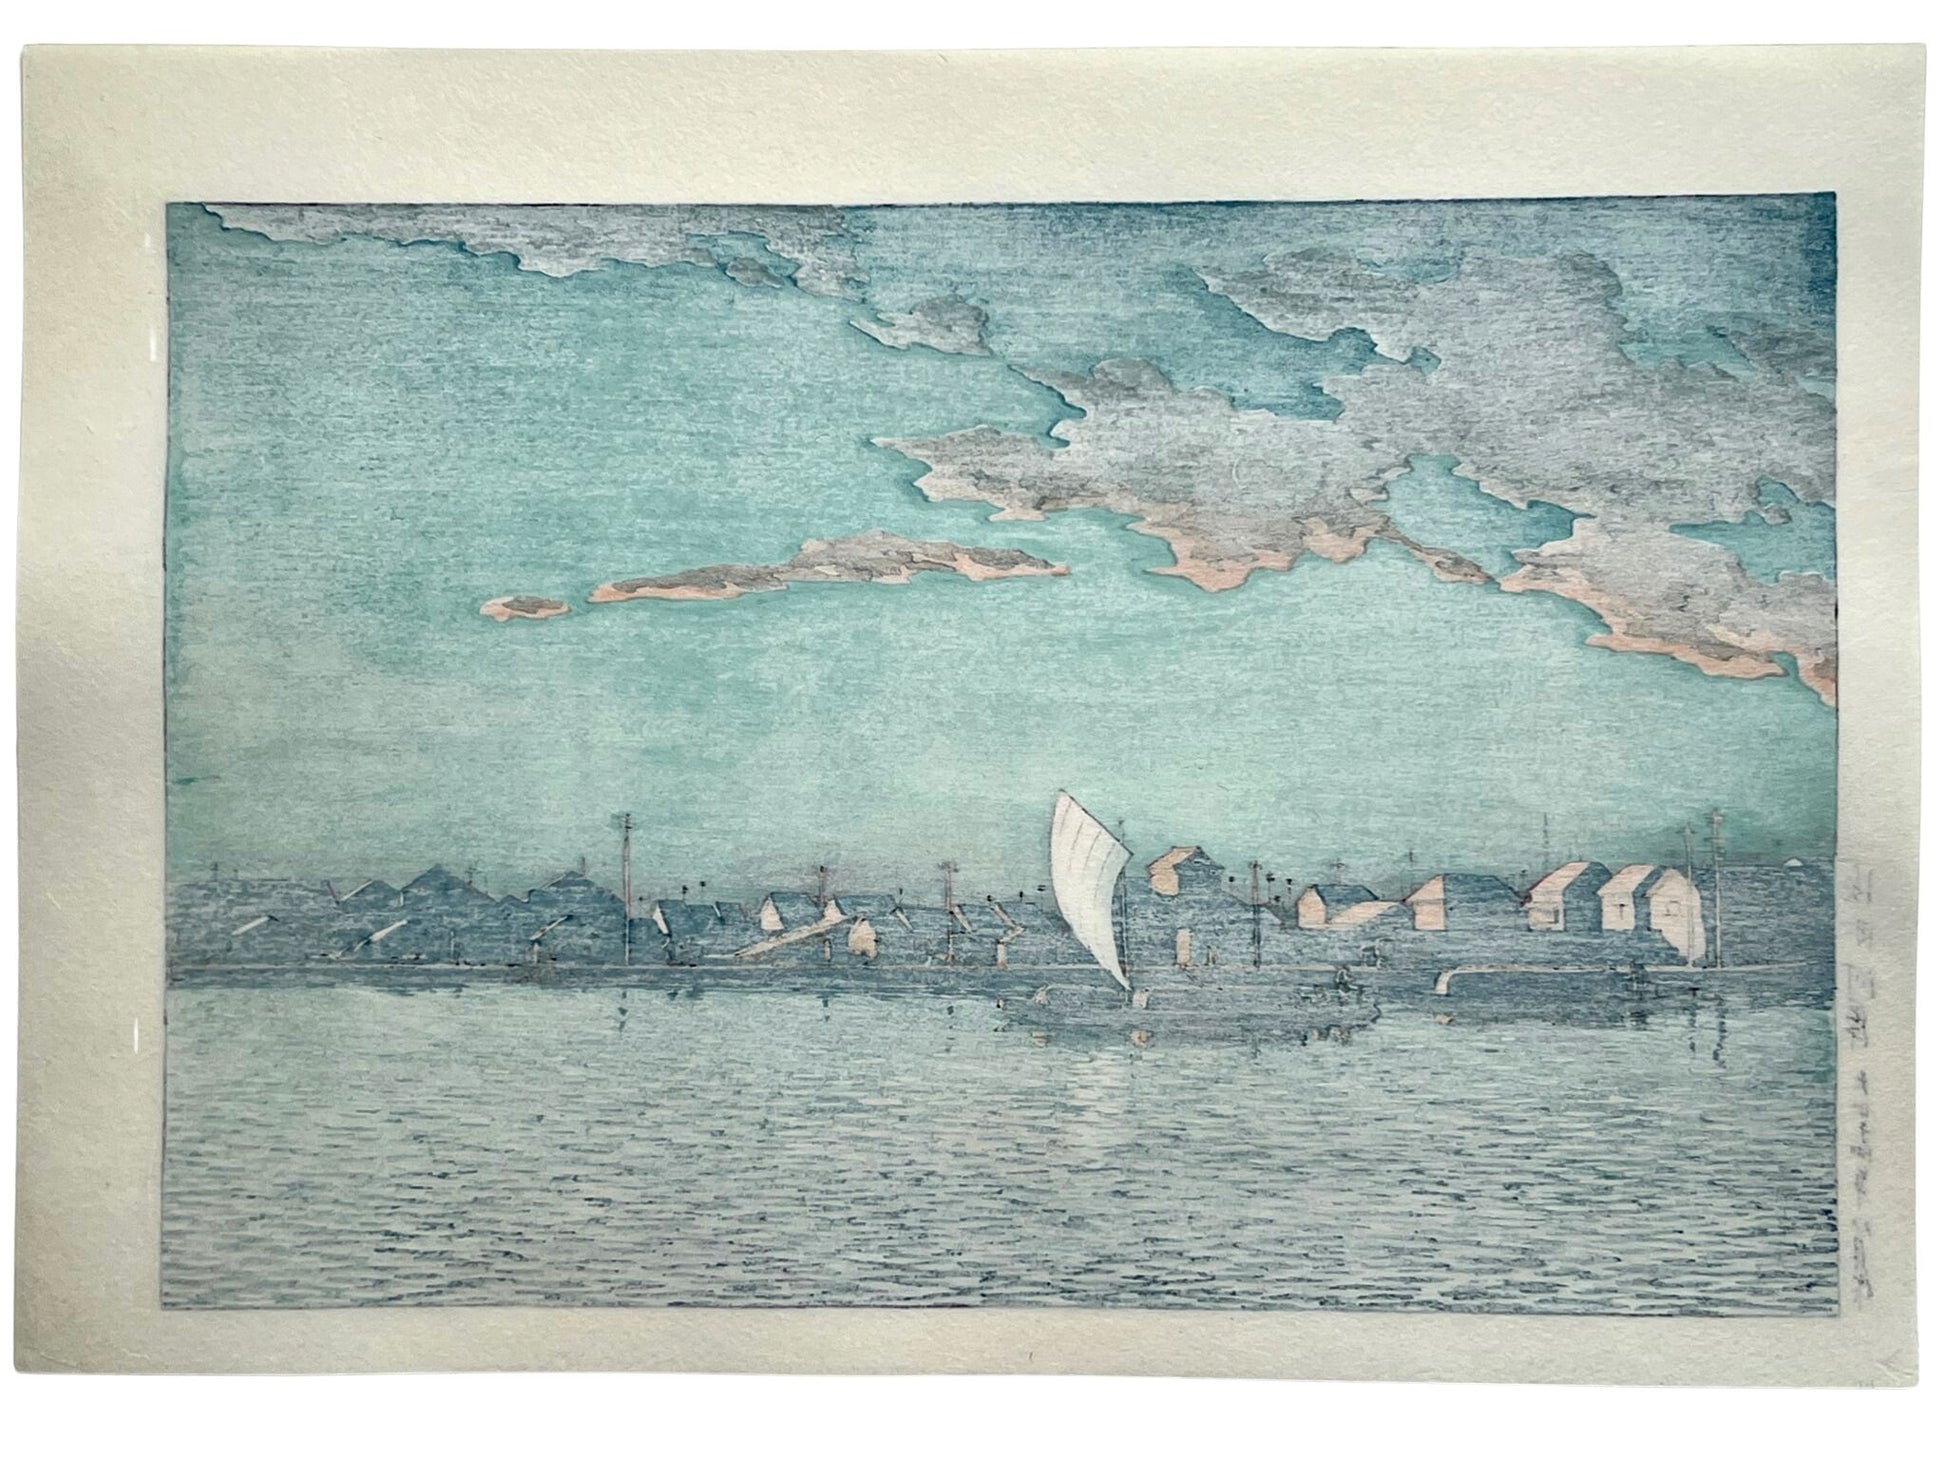 estampe japonaise de hasui kawase paysage riviere, maison, bateau au coucher du soleil, dos de l'estampe